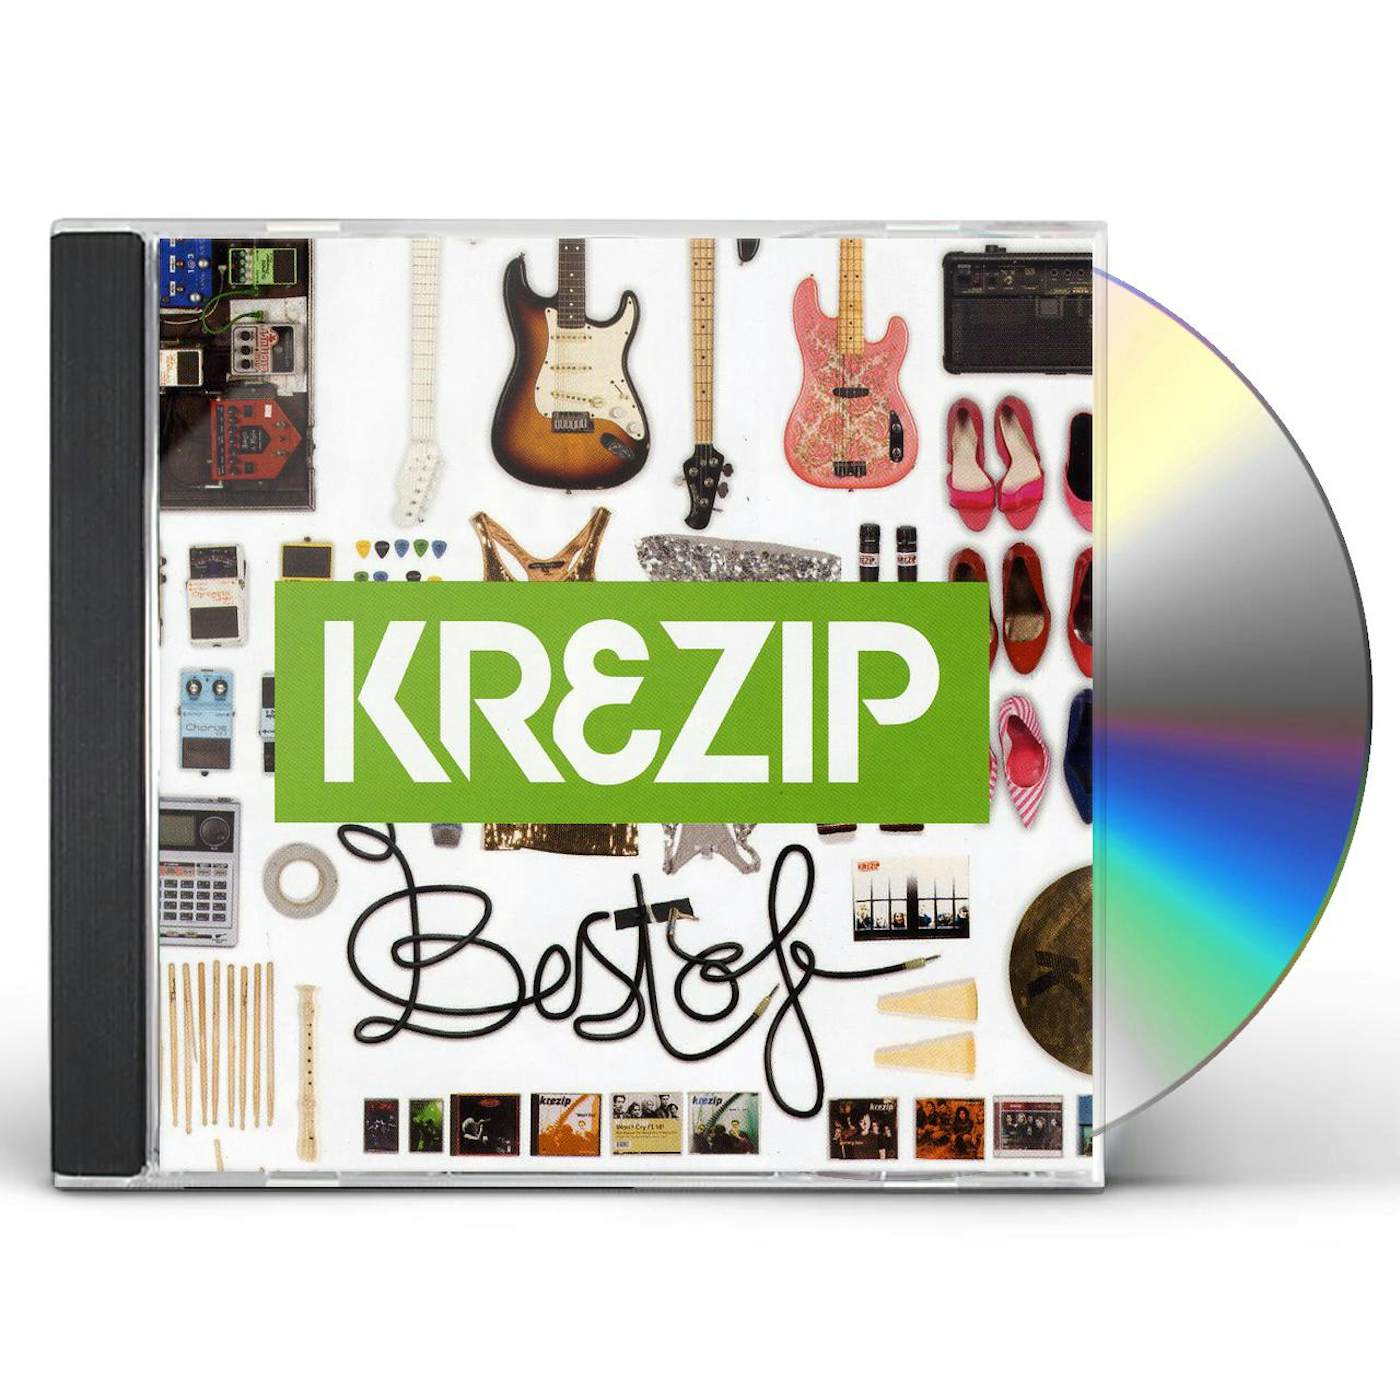 Krezip BEST OF CD